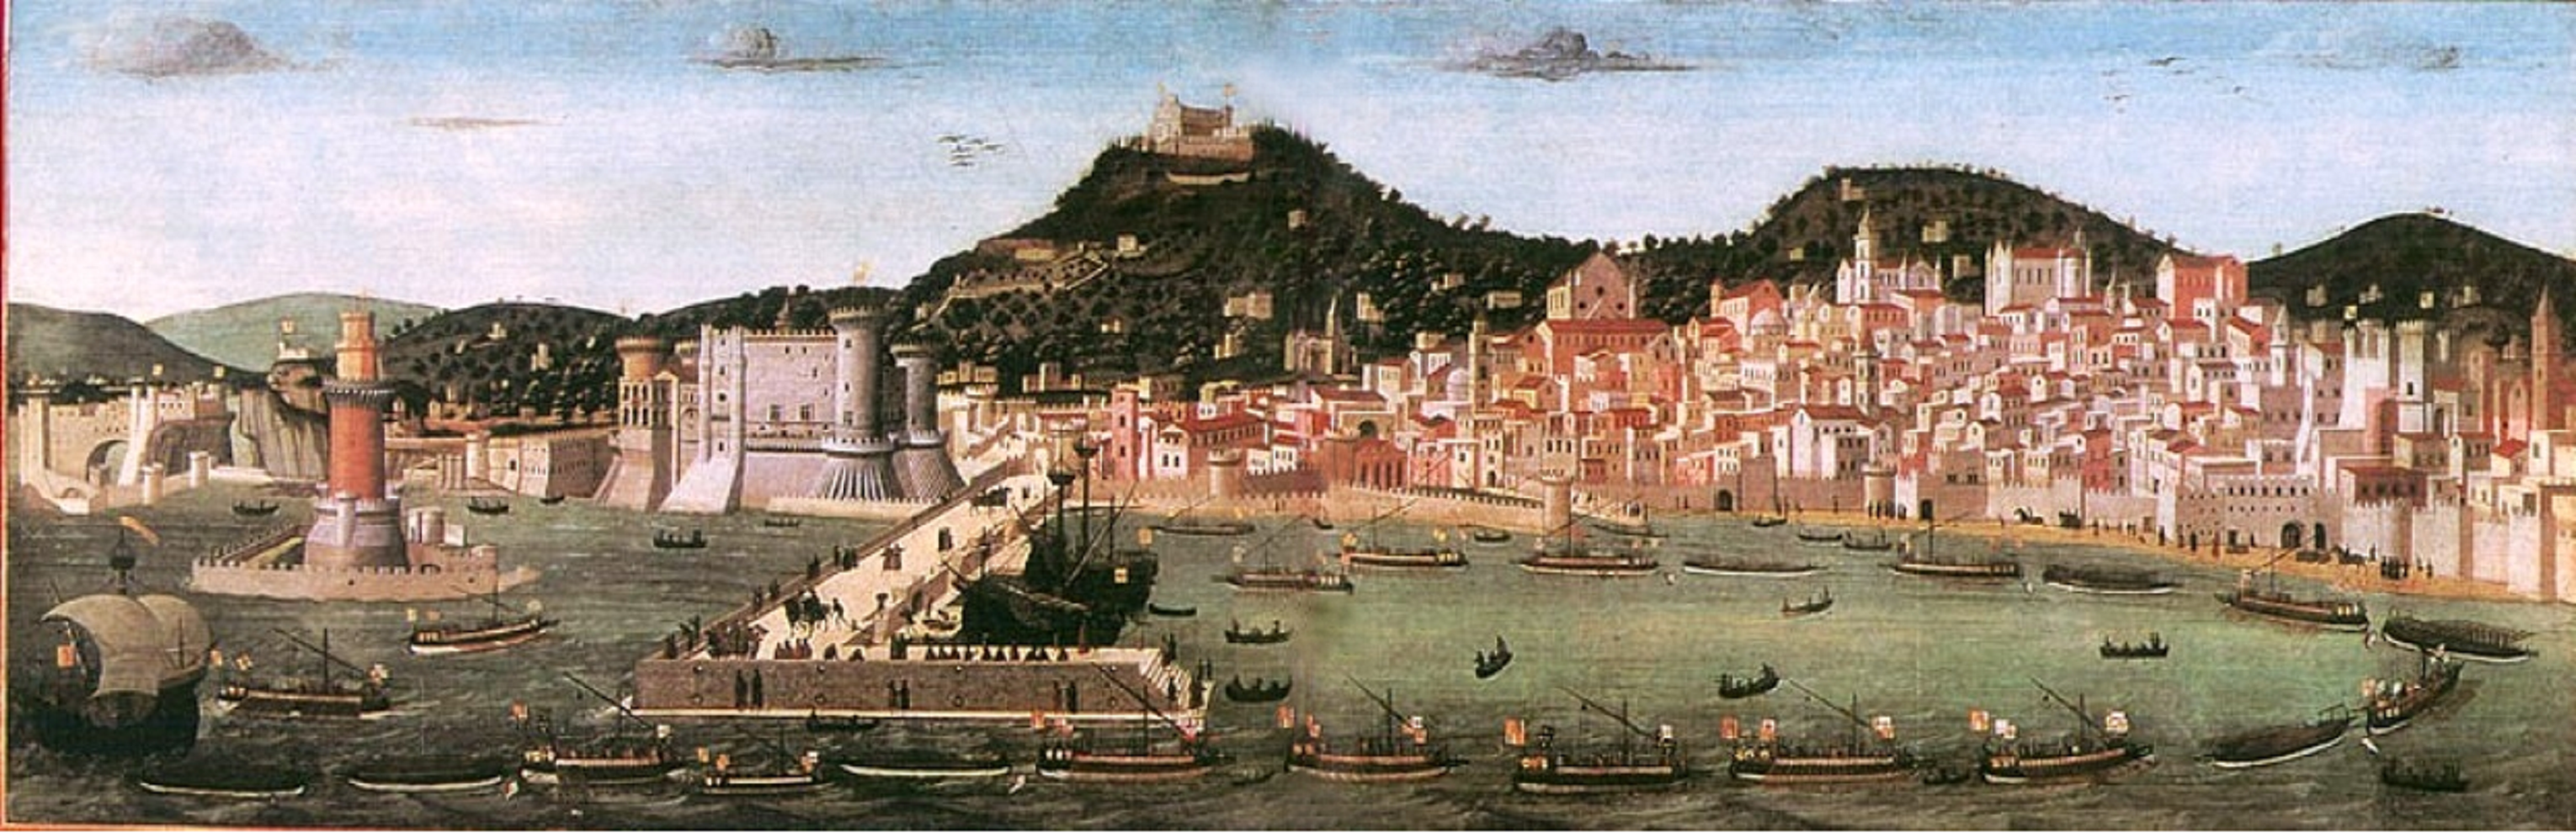 Alfonso el Magnánimo conquista Nápoles